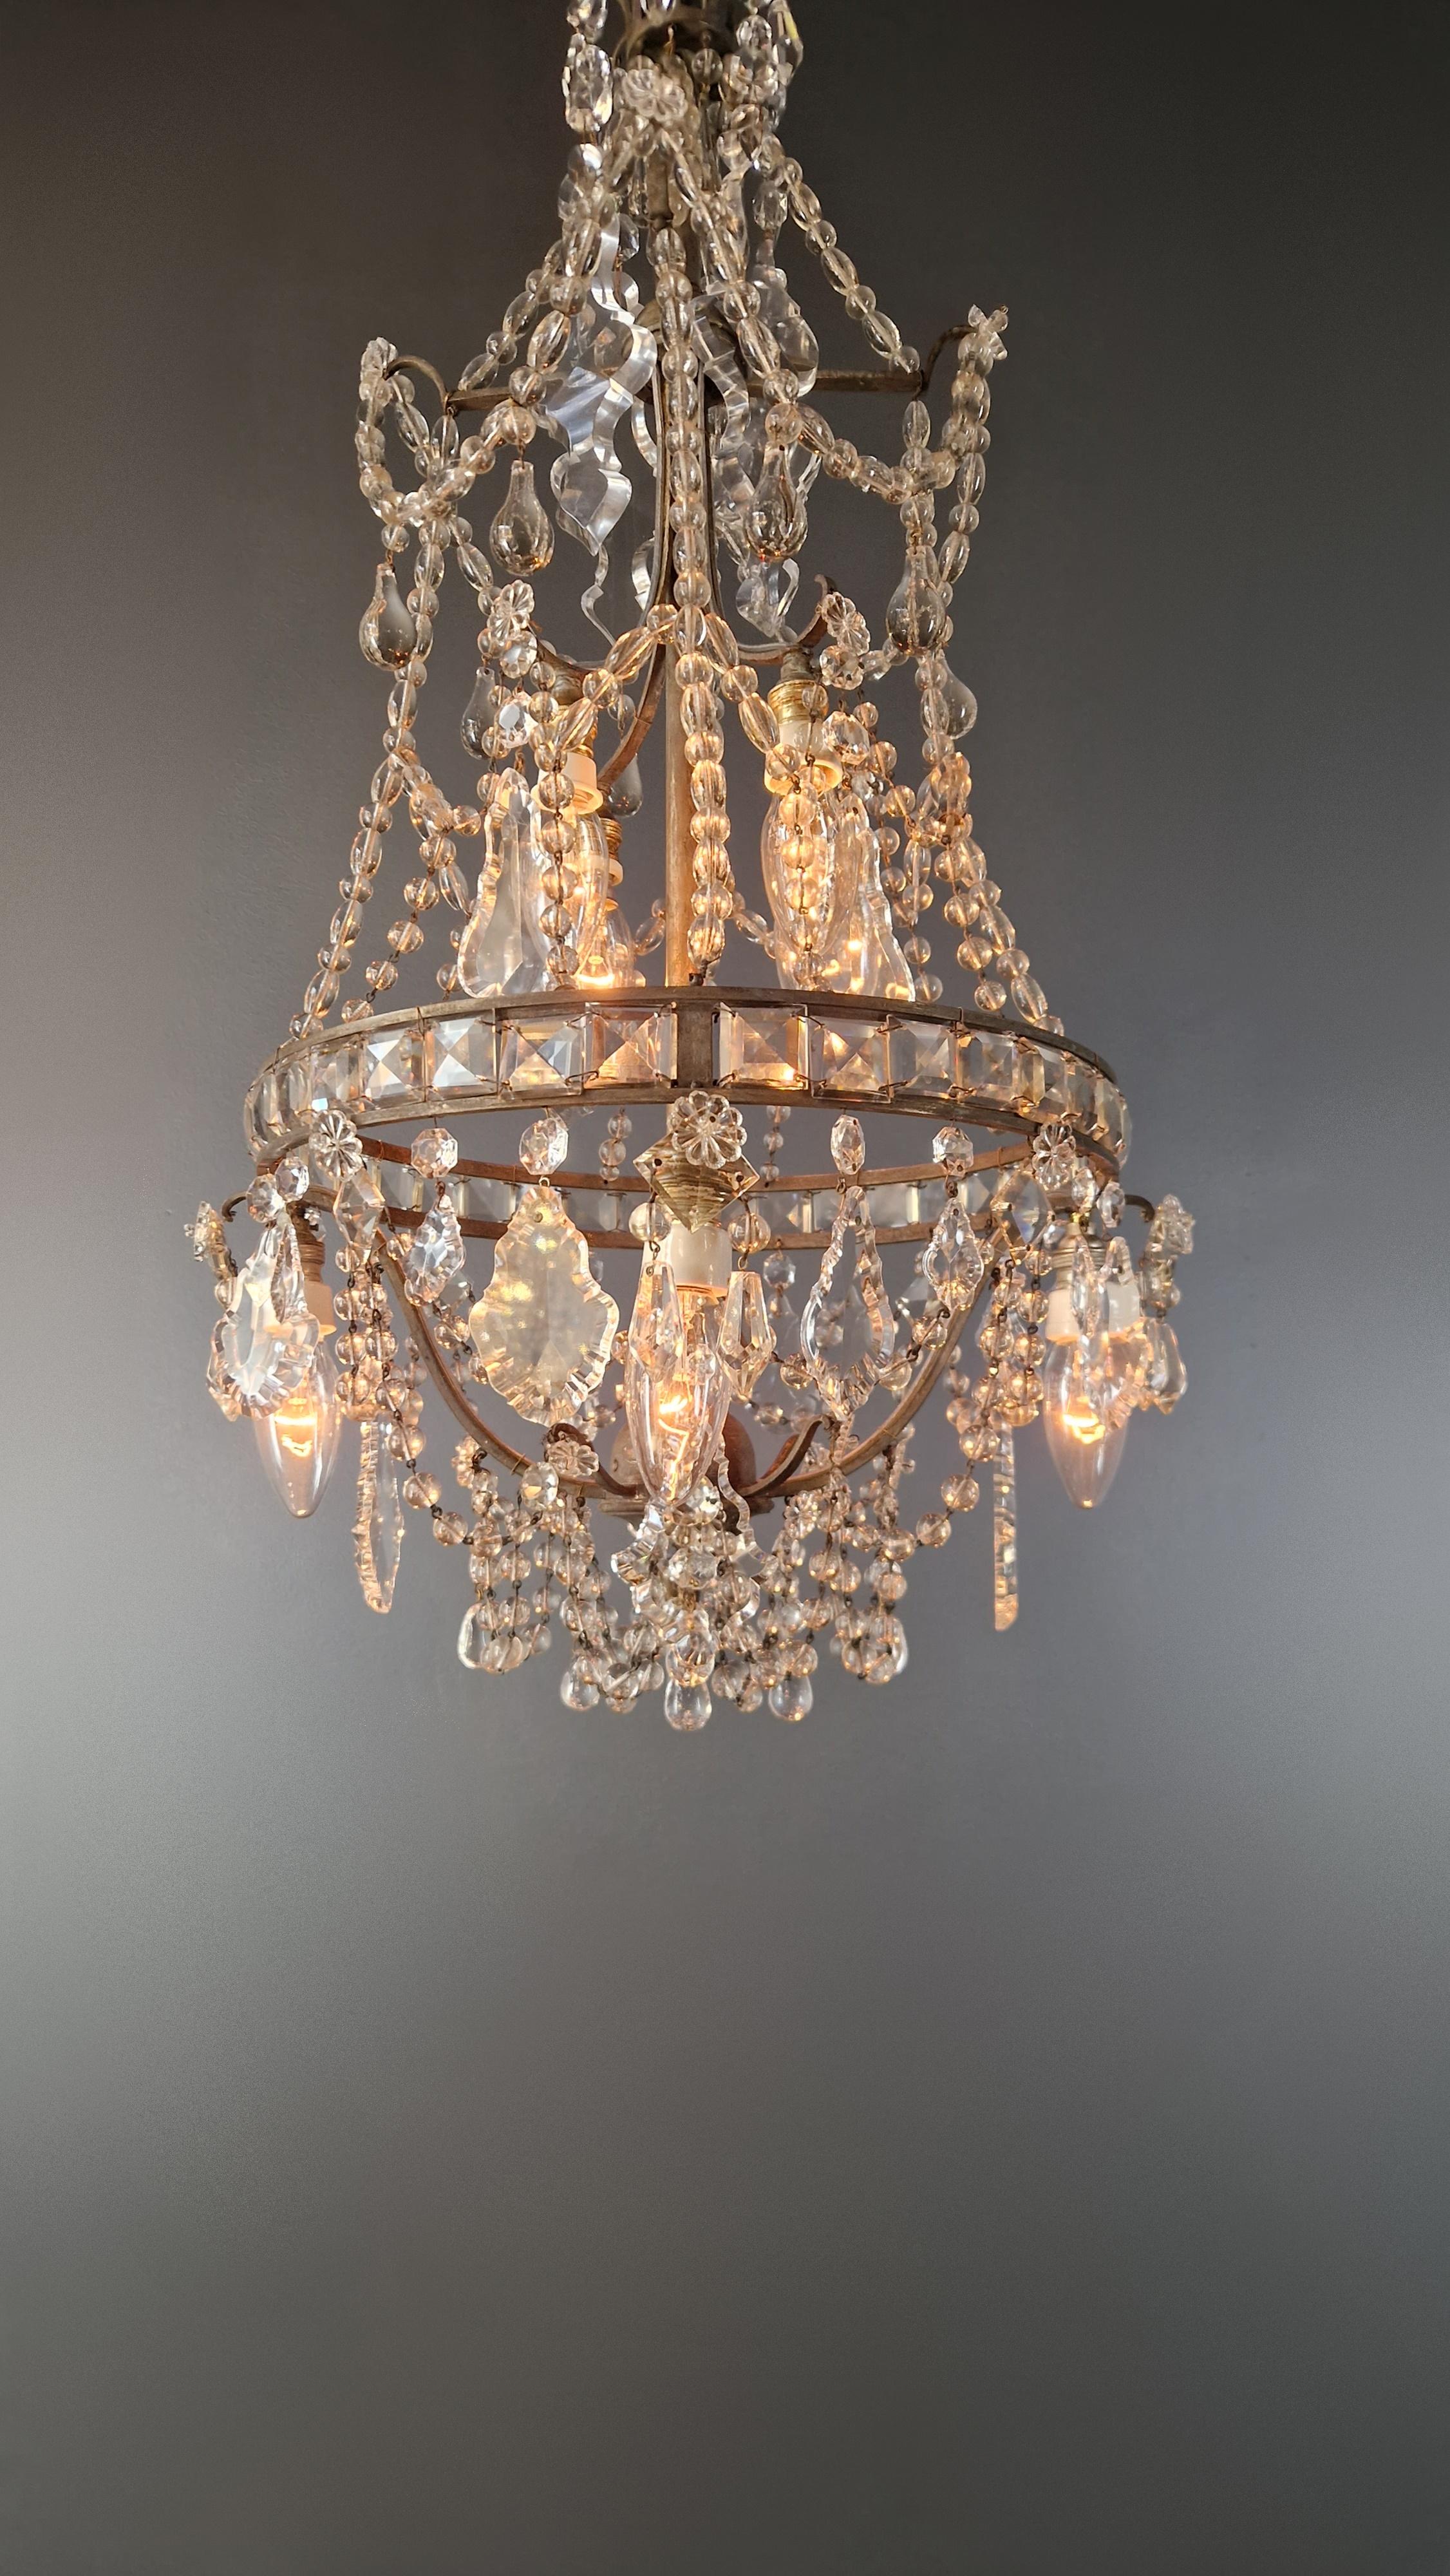 Lustre A Cage Antique Art Nouveau Brass Ceiling Crystal Chandelier For Sale 1